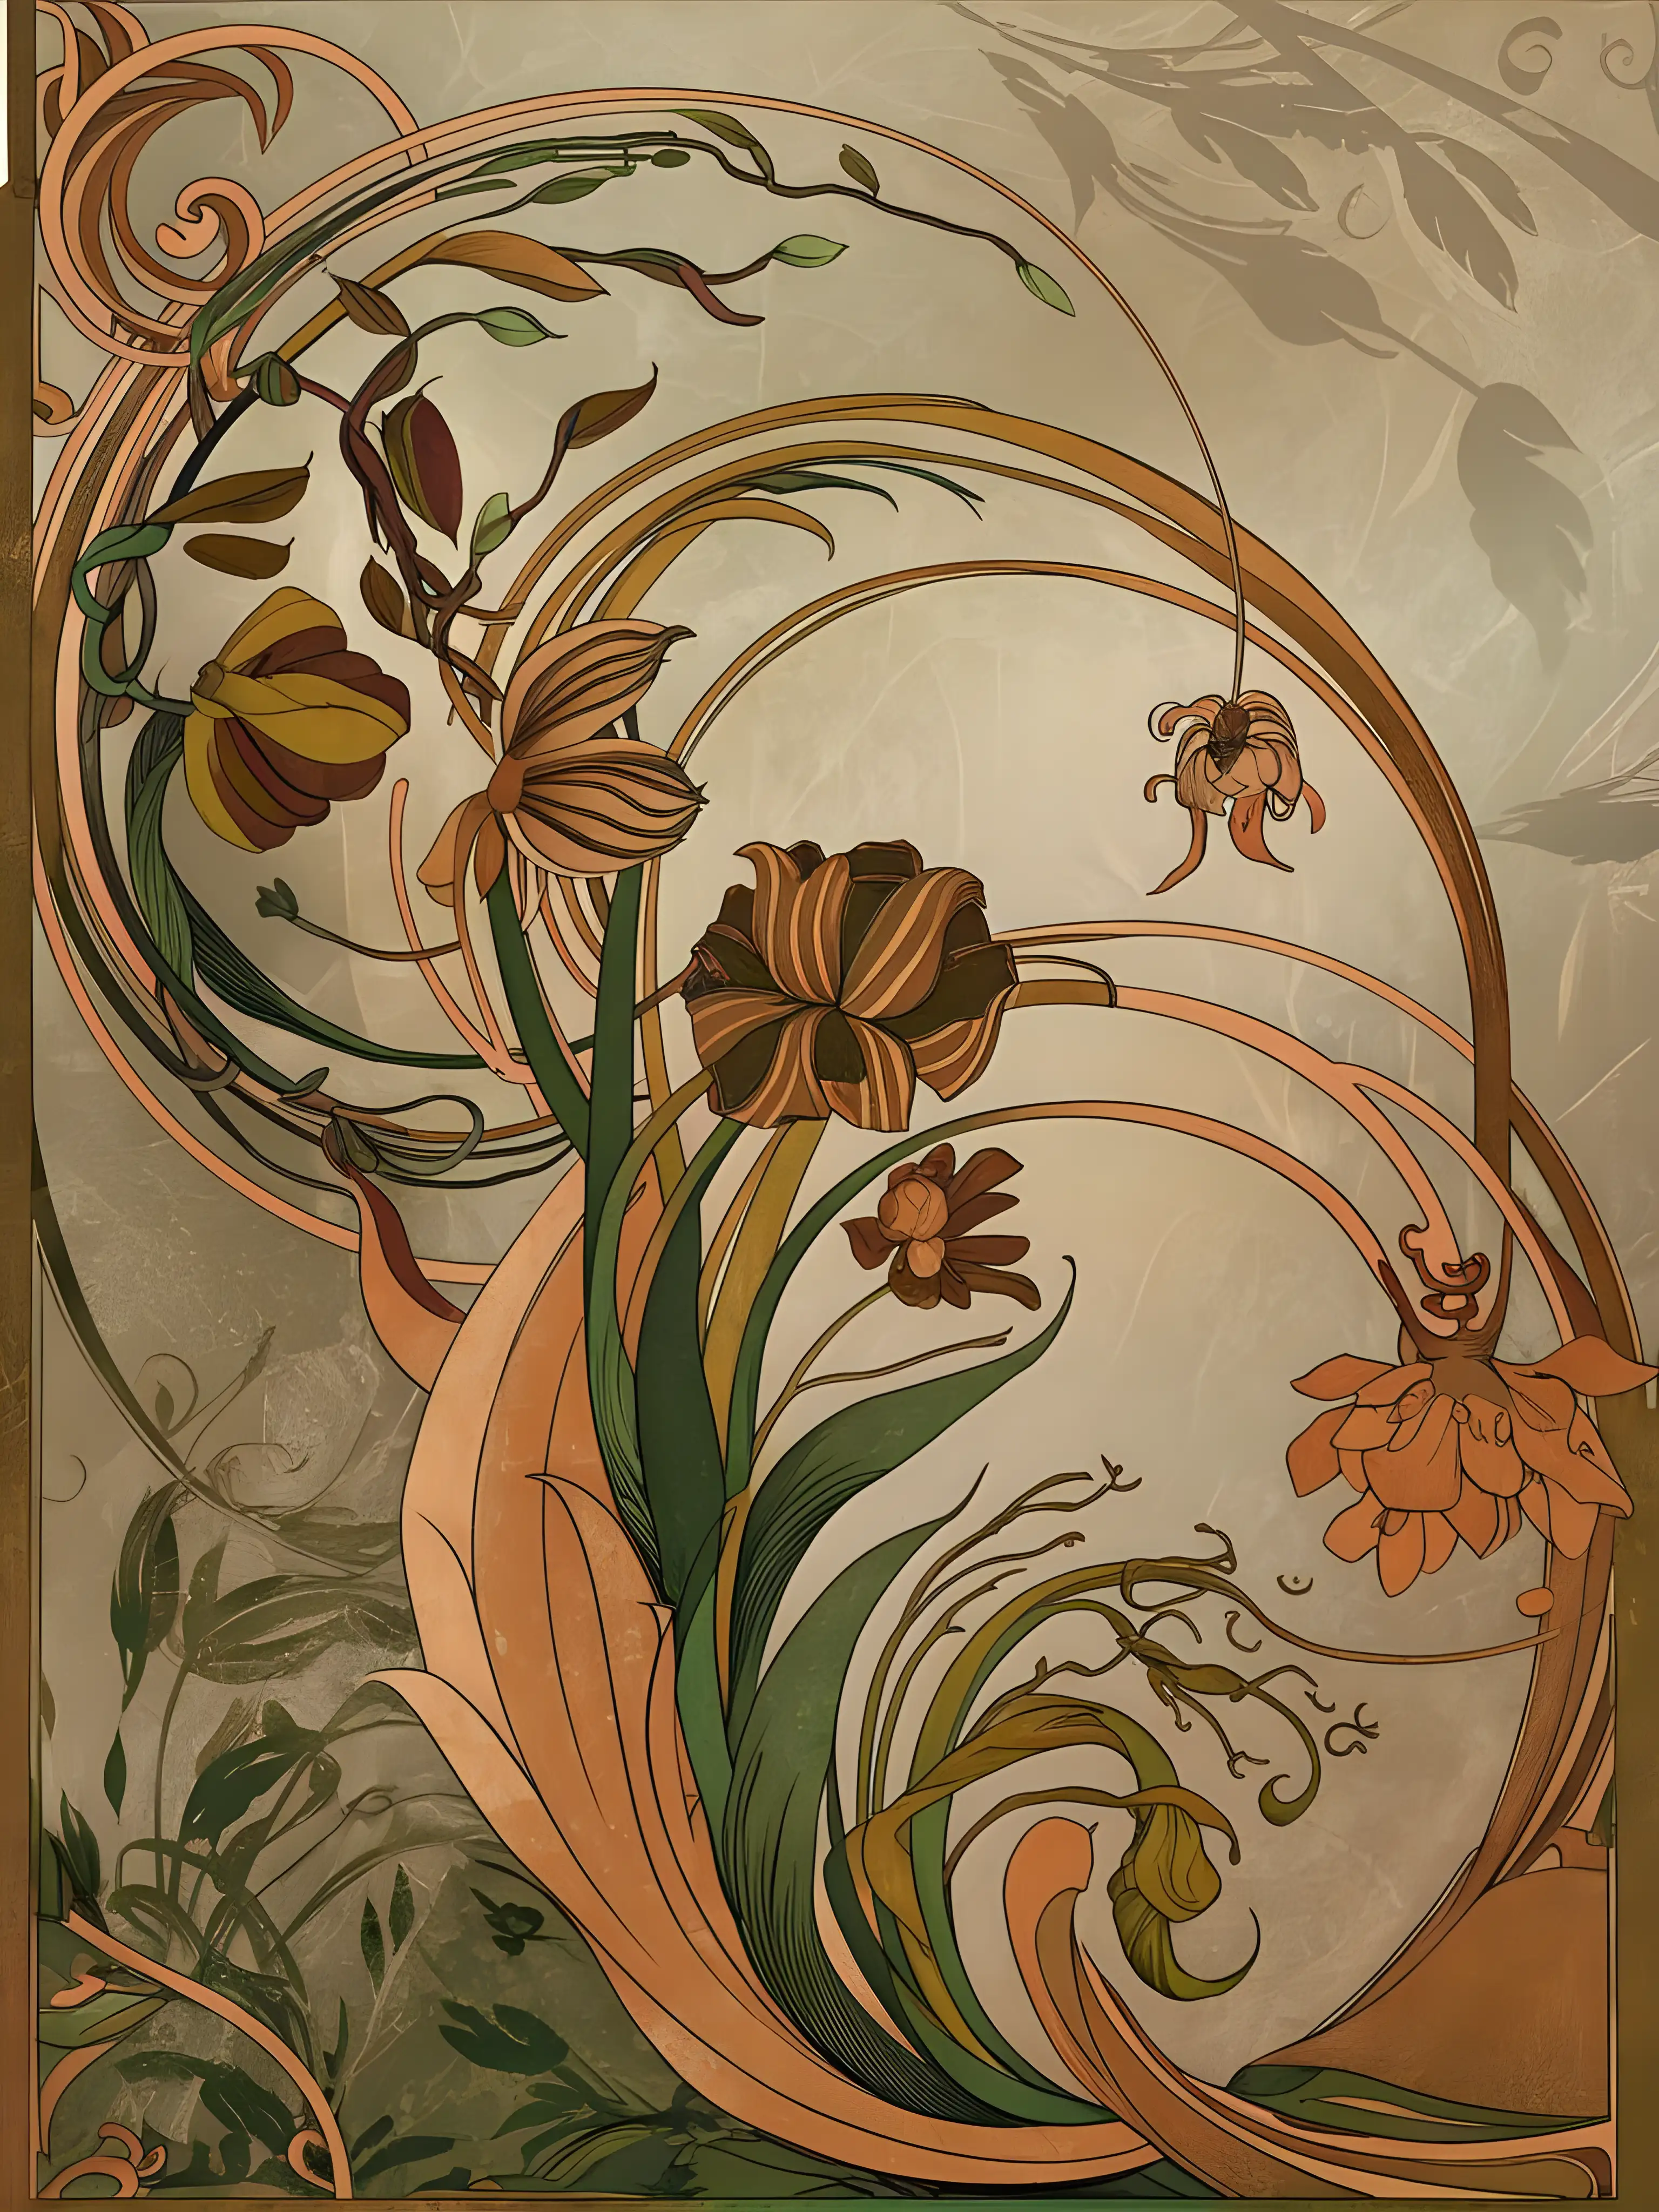 Elegant Art Nouveau Print with Floral Motifs and Flowing Lines